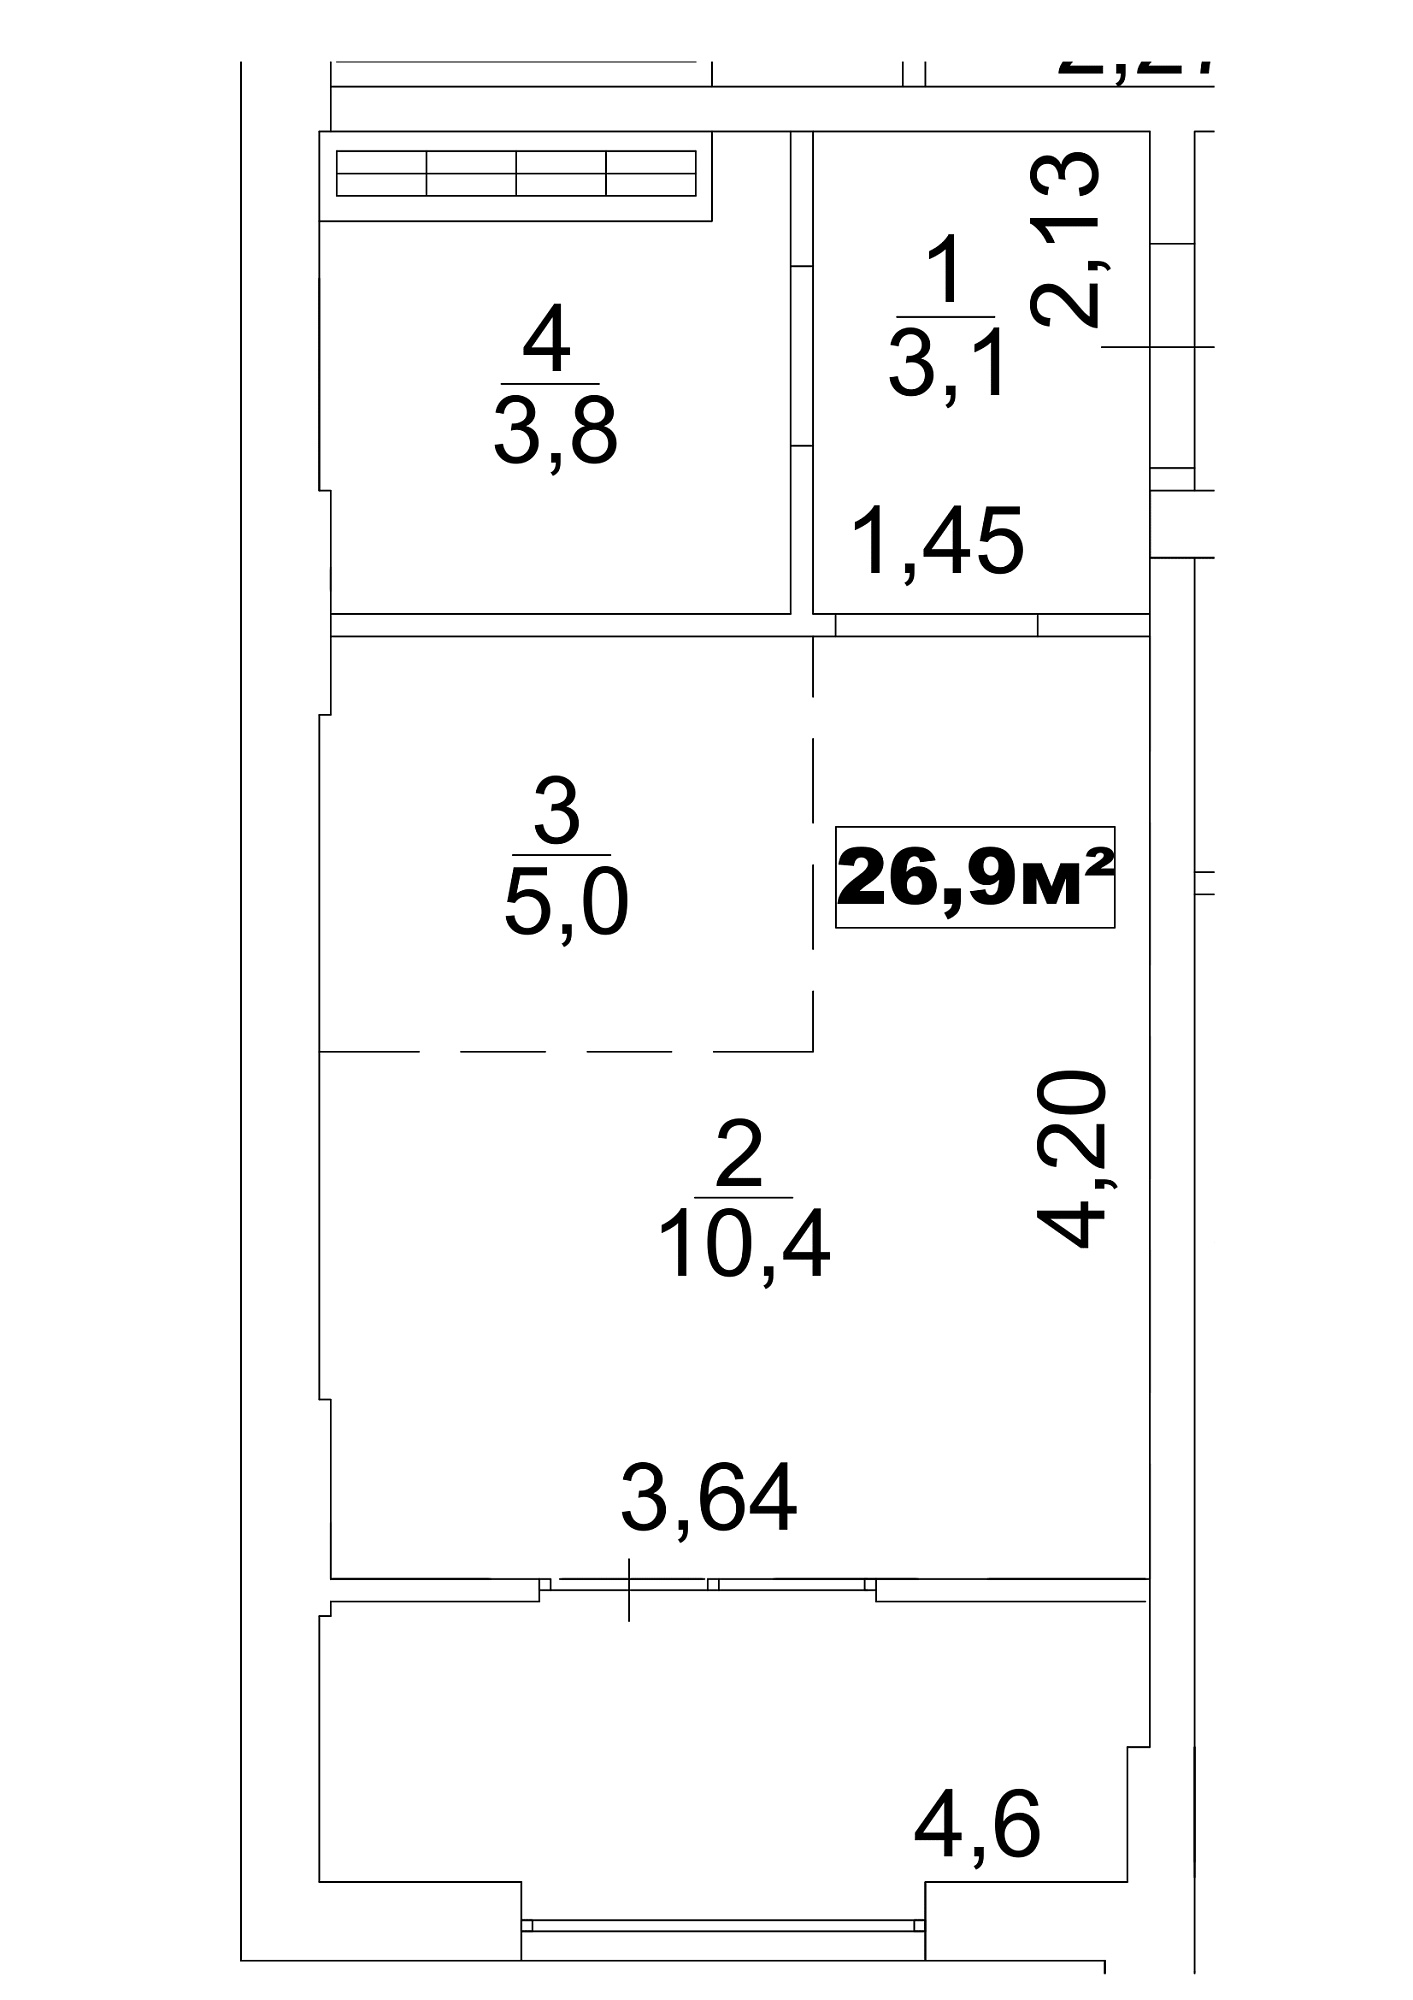 Планування Smart-квартира площею 26.9м2, AB-13-04/0027а.